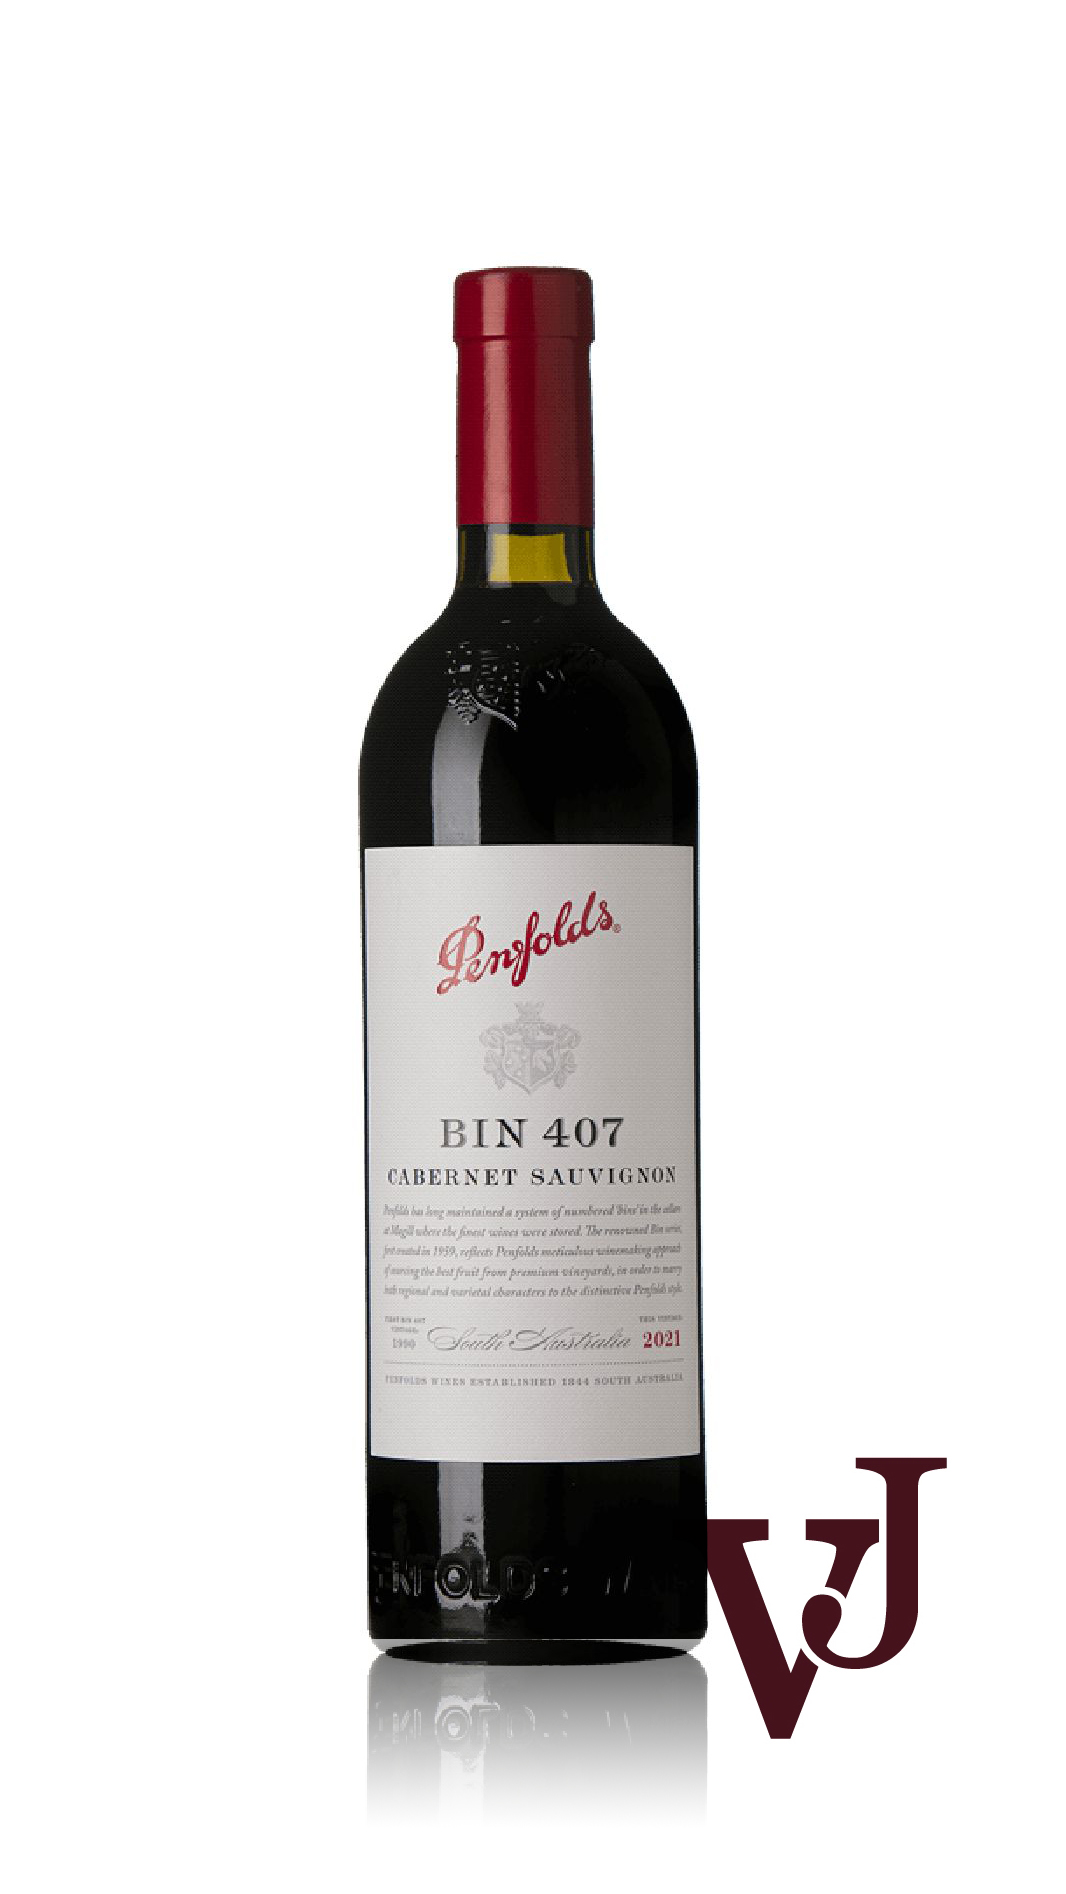 Rött Vin - Penfolds Bin 407 Cabernet Sauvignon 2021 artikel nummer 9448301 från producenten Penfolds från Australien